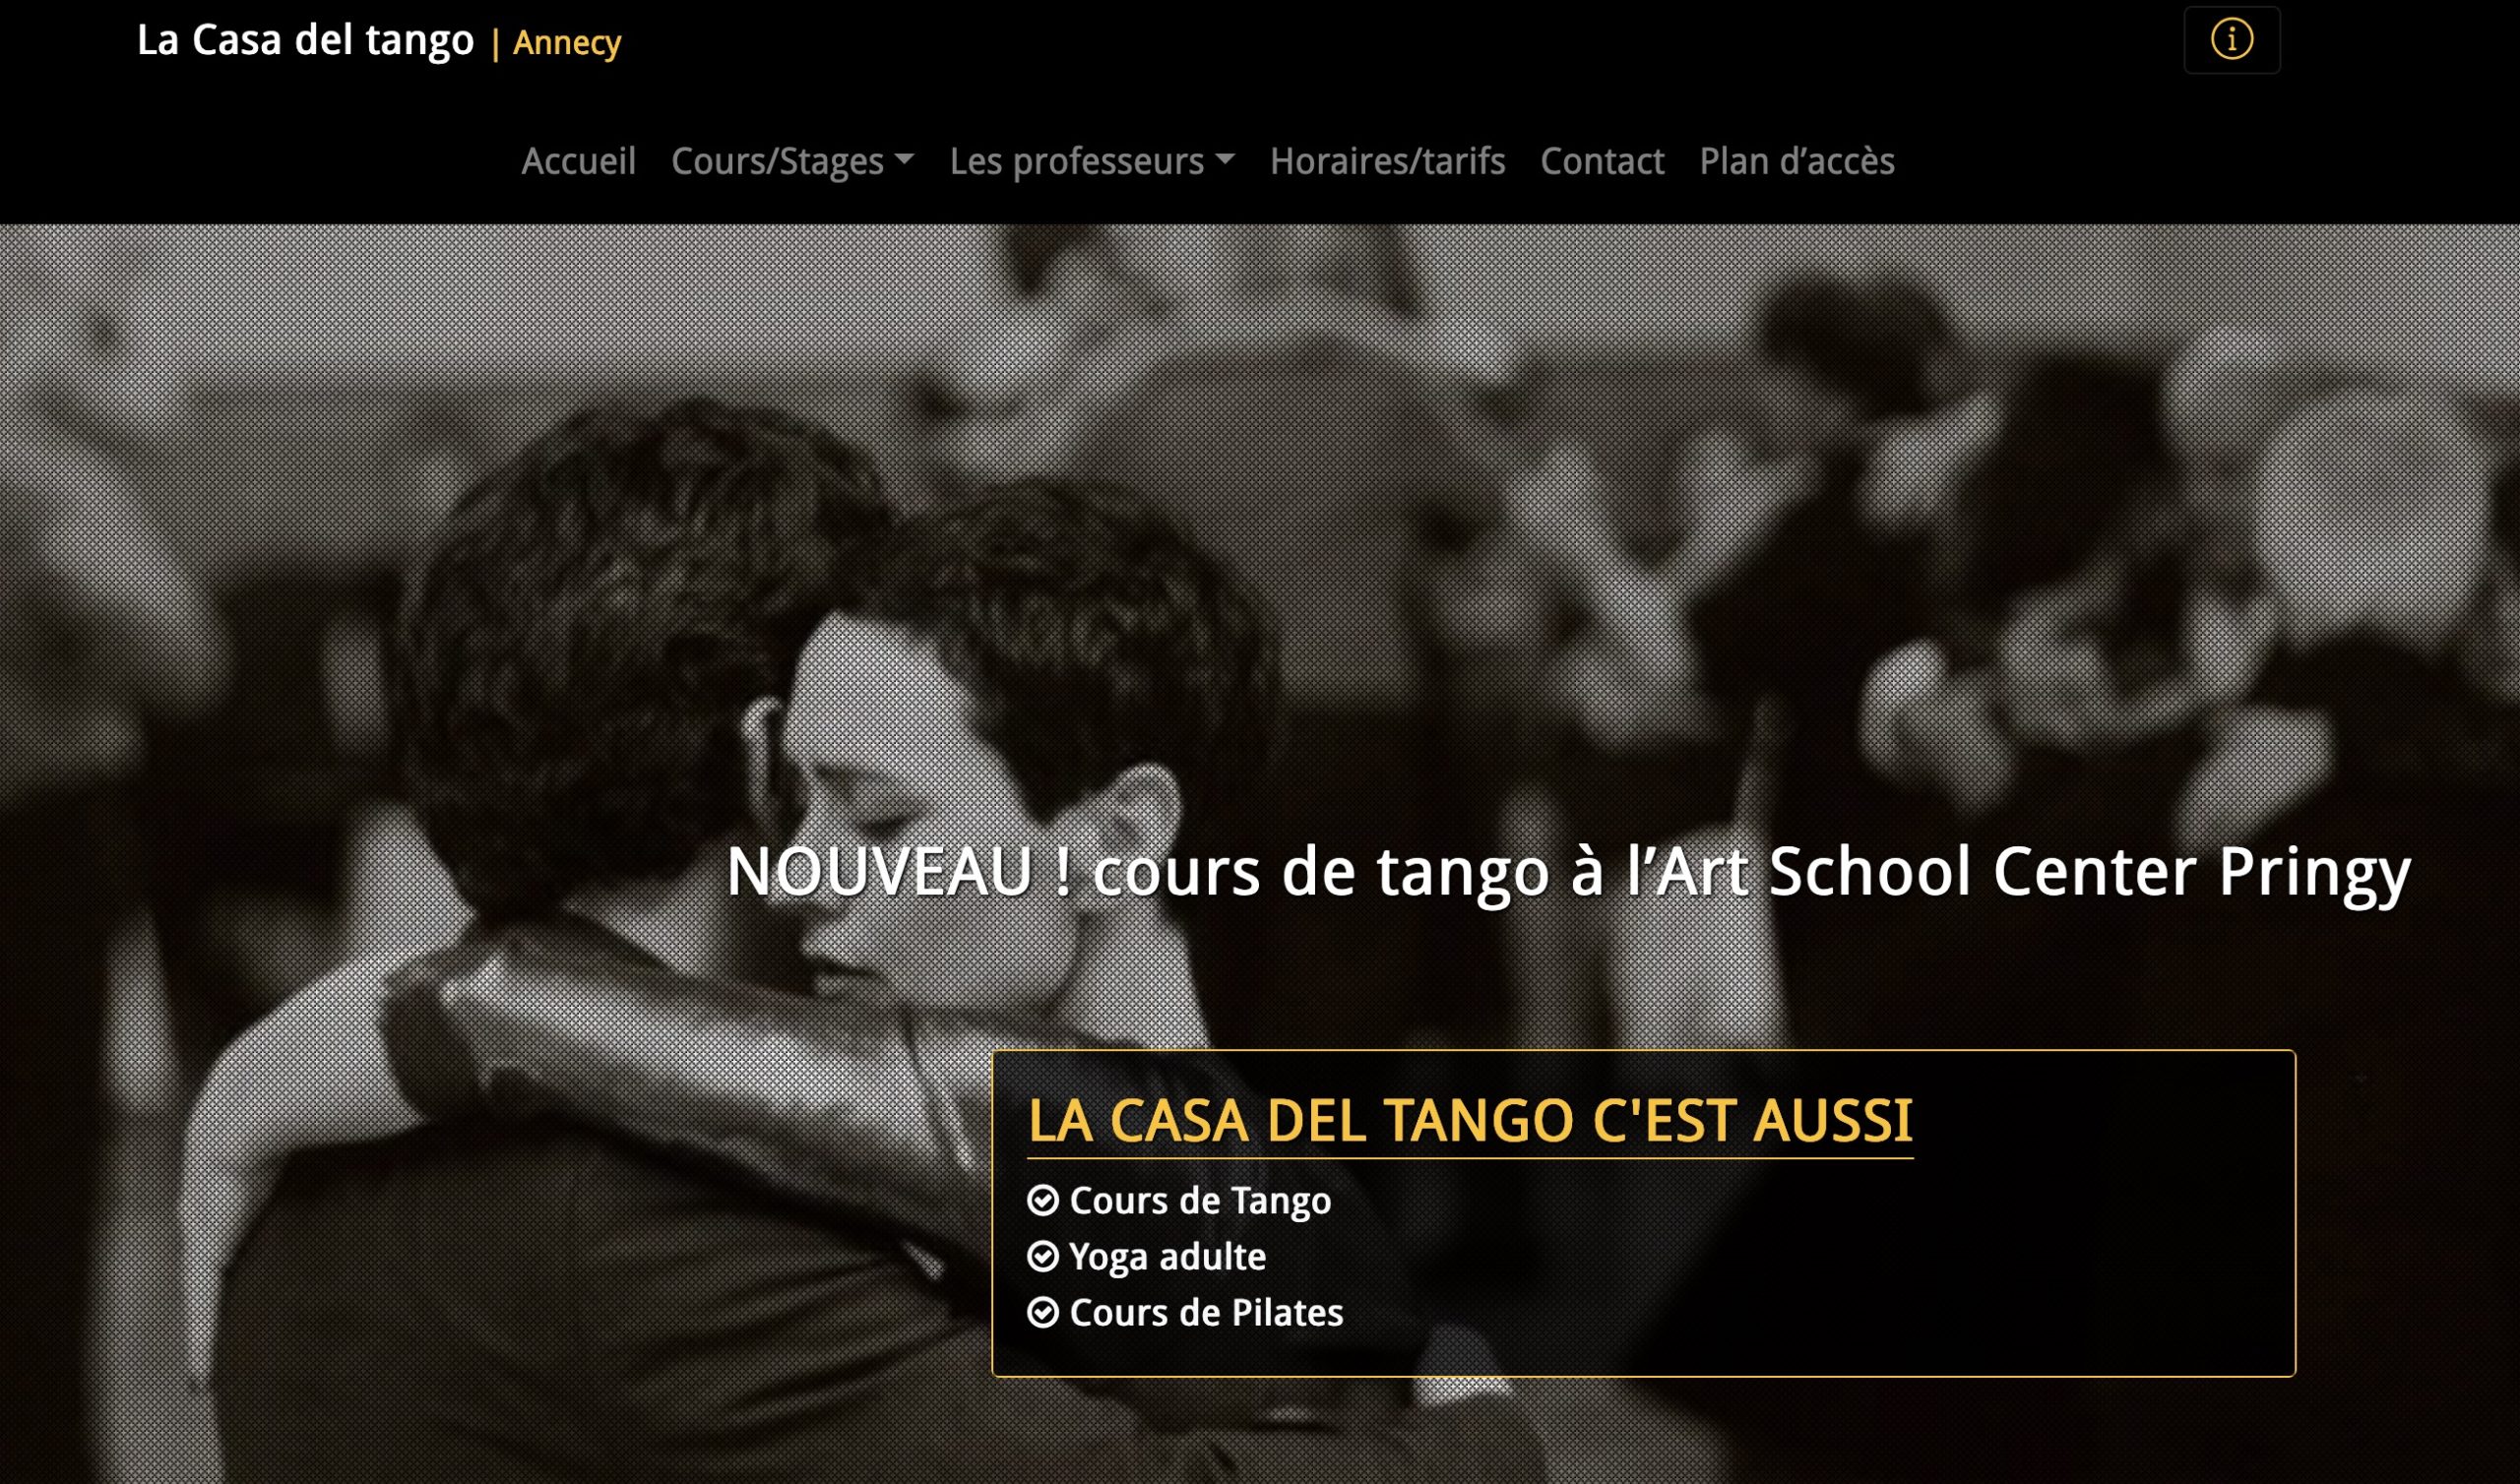 La Casa del Tango - Annecy - home page